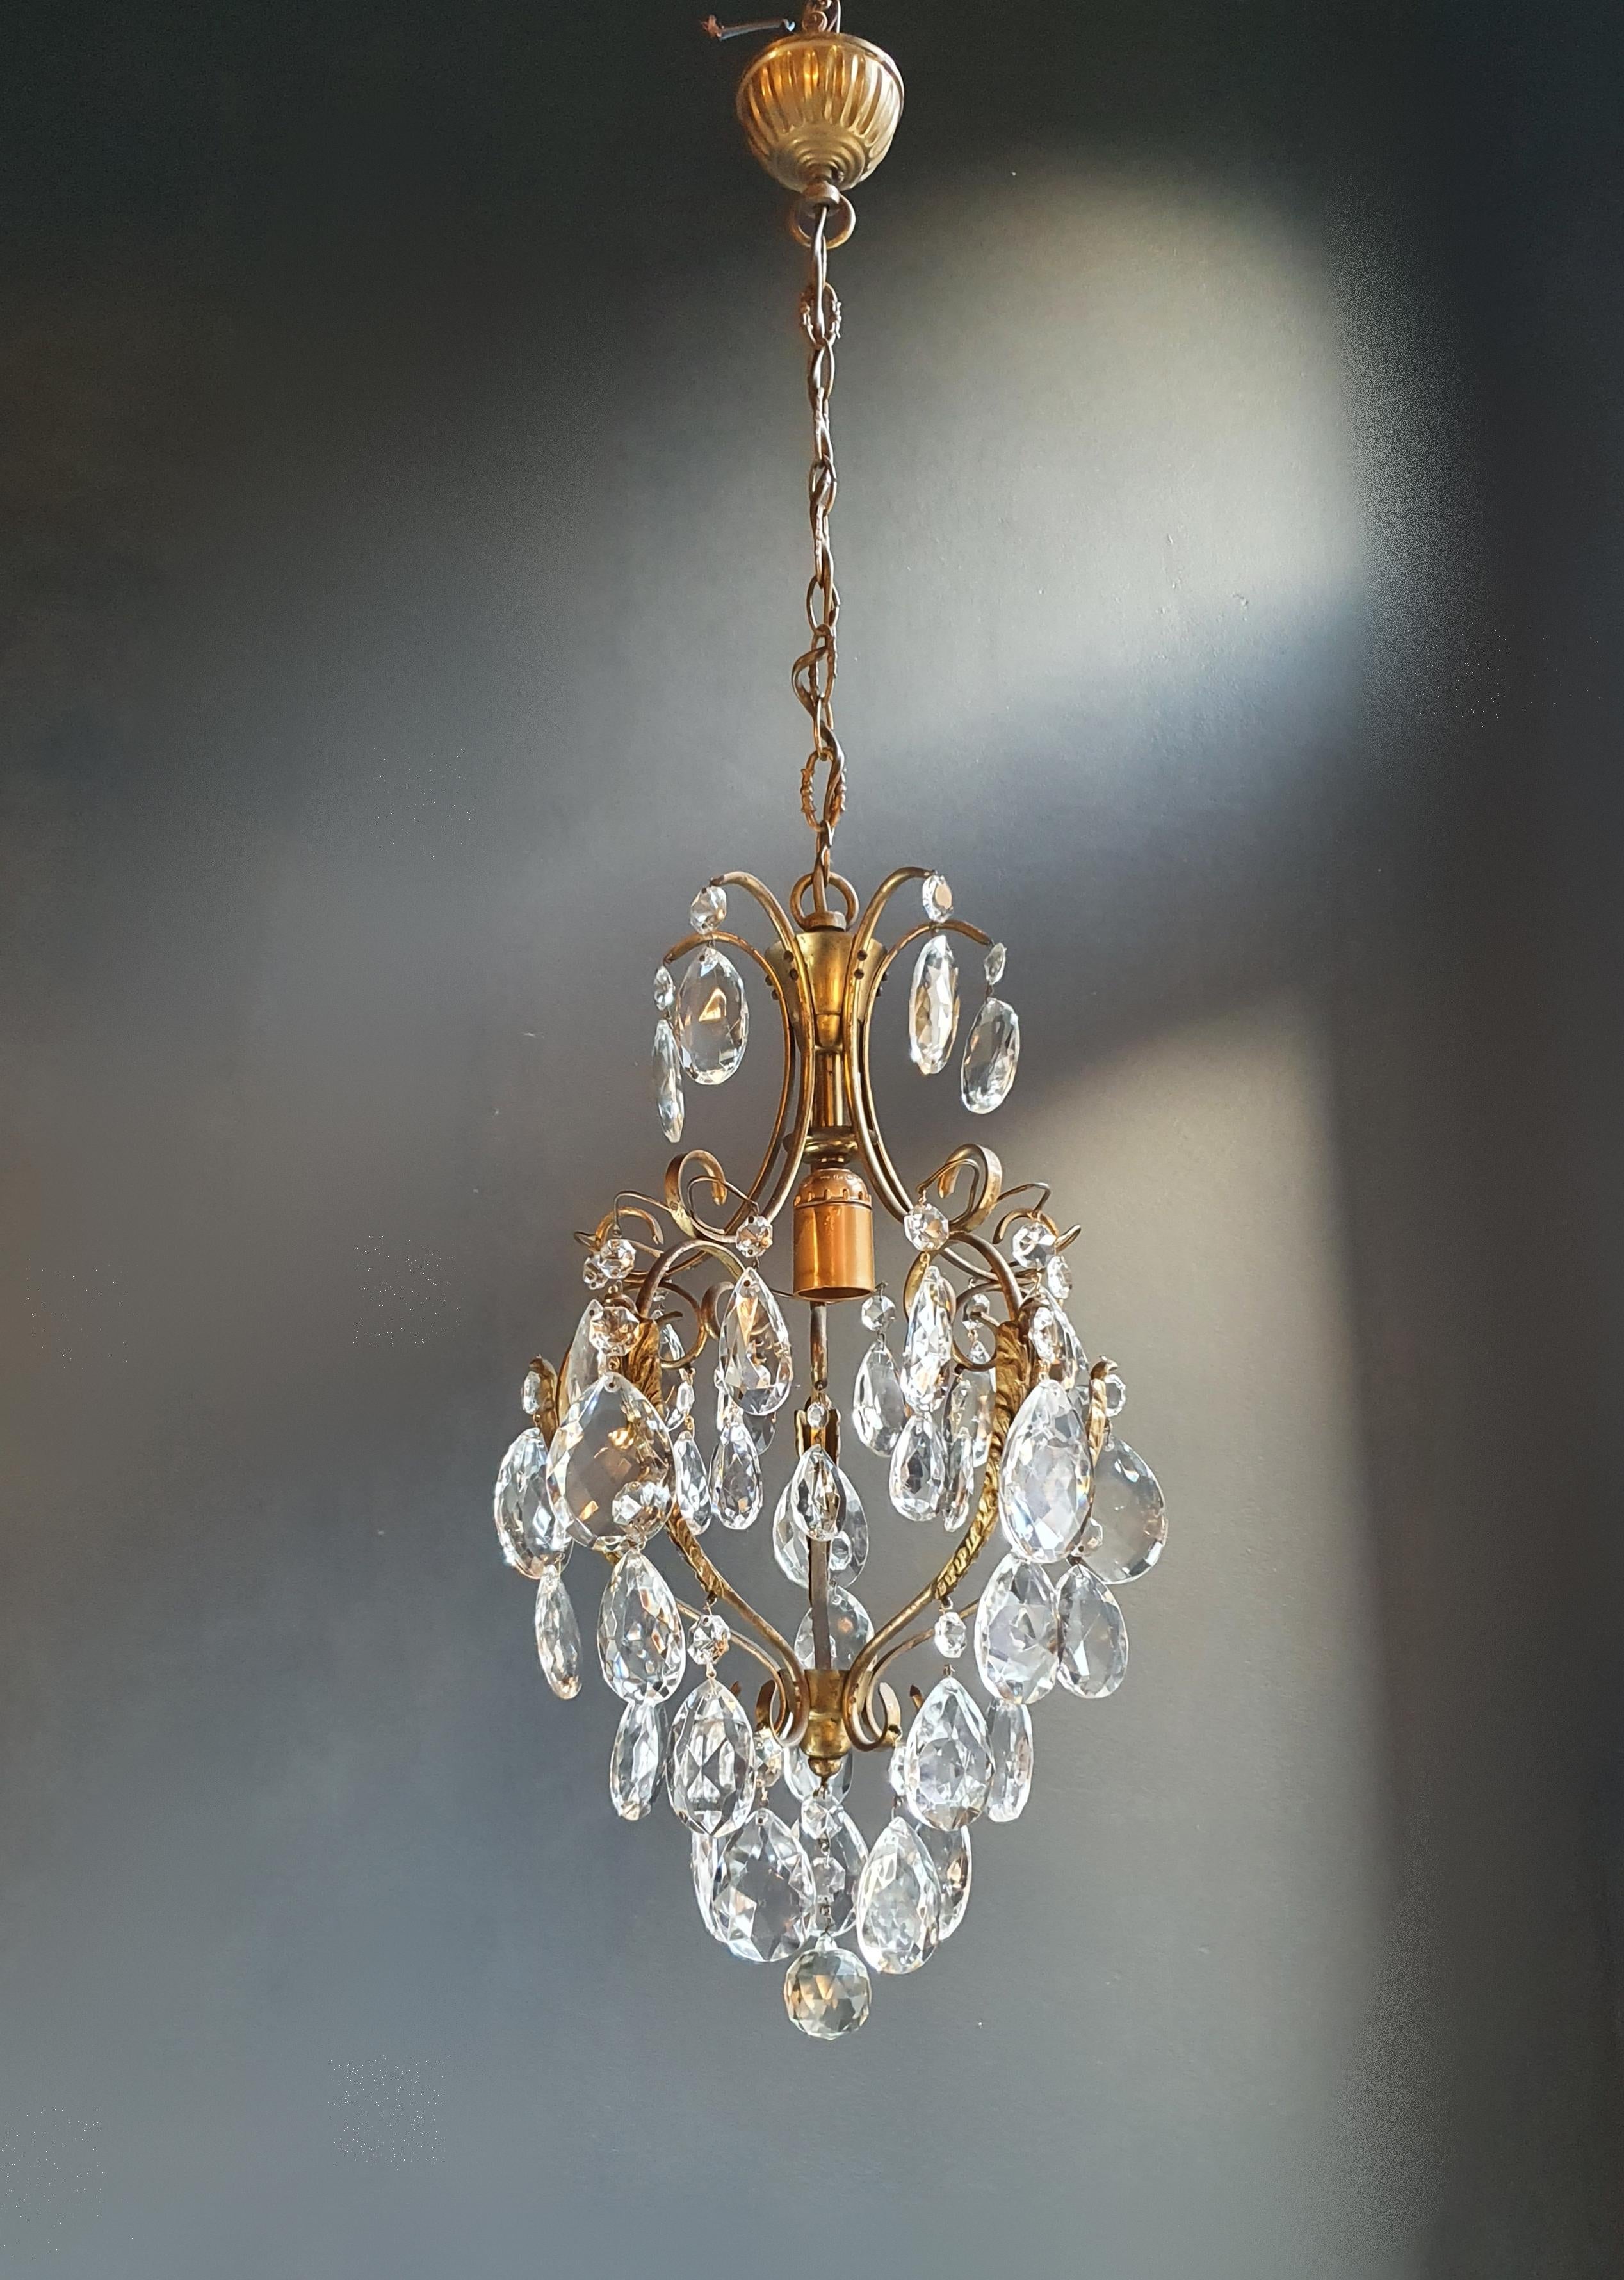 Hand-Knotted Lustré Cage Chandelier Crystal Ceiling Lamp Hall Lustre Antique Art Nouveau